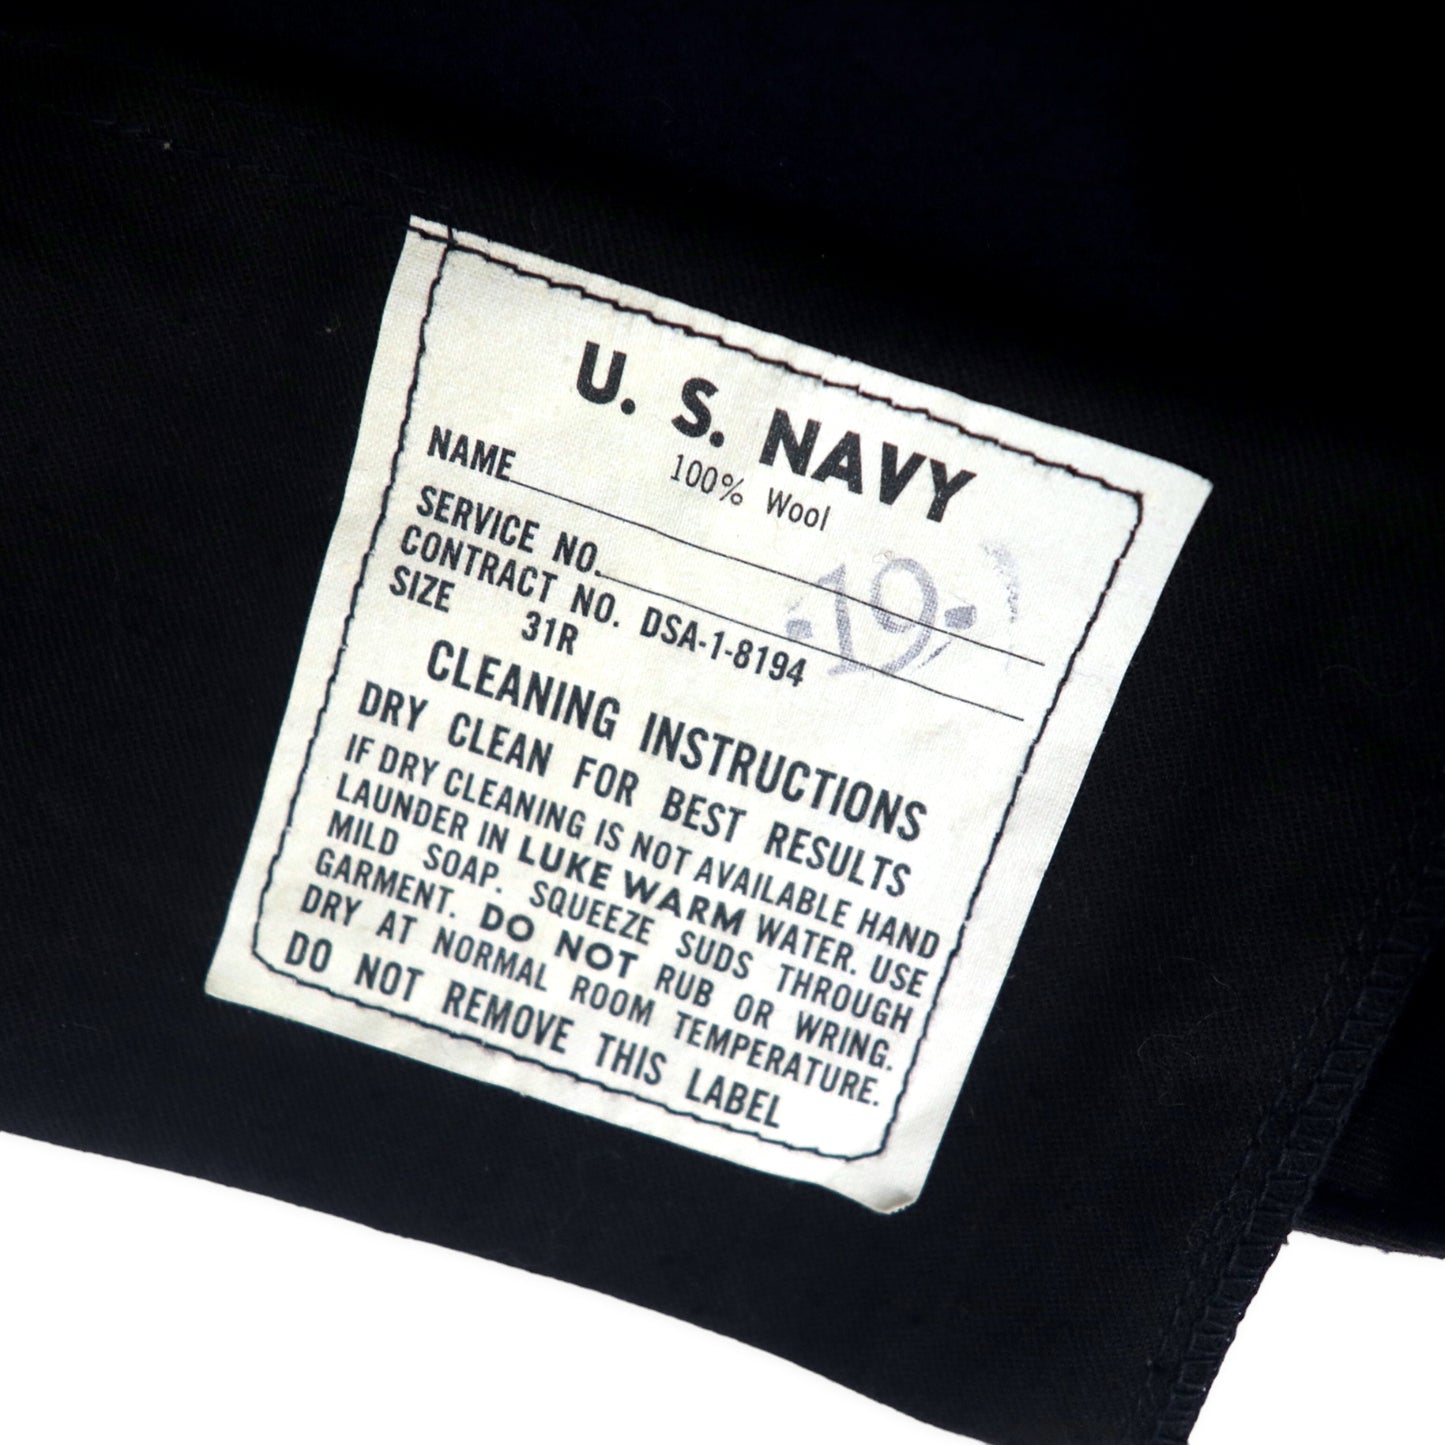 US NAVY 13ボタン ワイド セーラーパンツ 31R ネイビー メルトン ウール ミリタリー